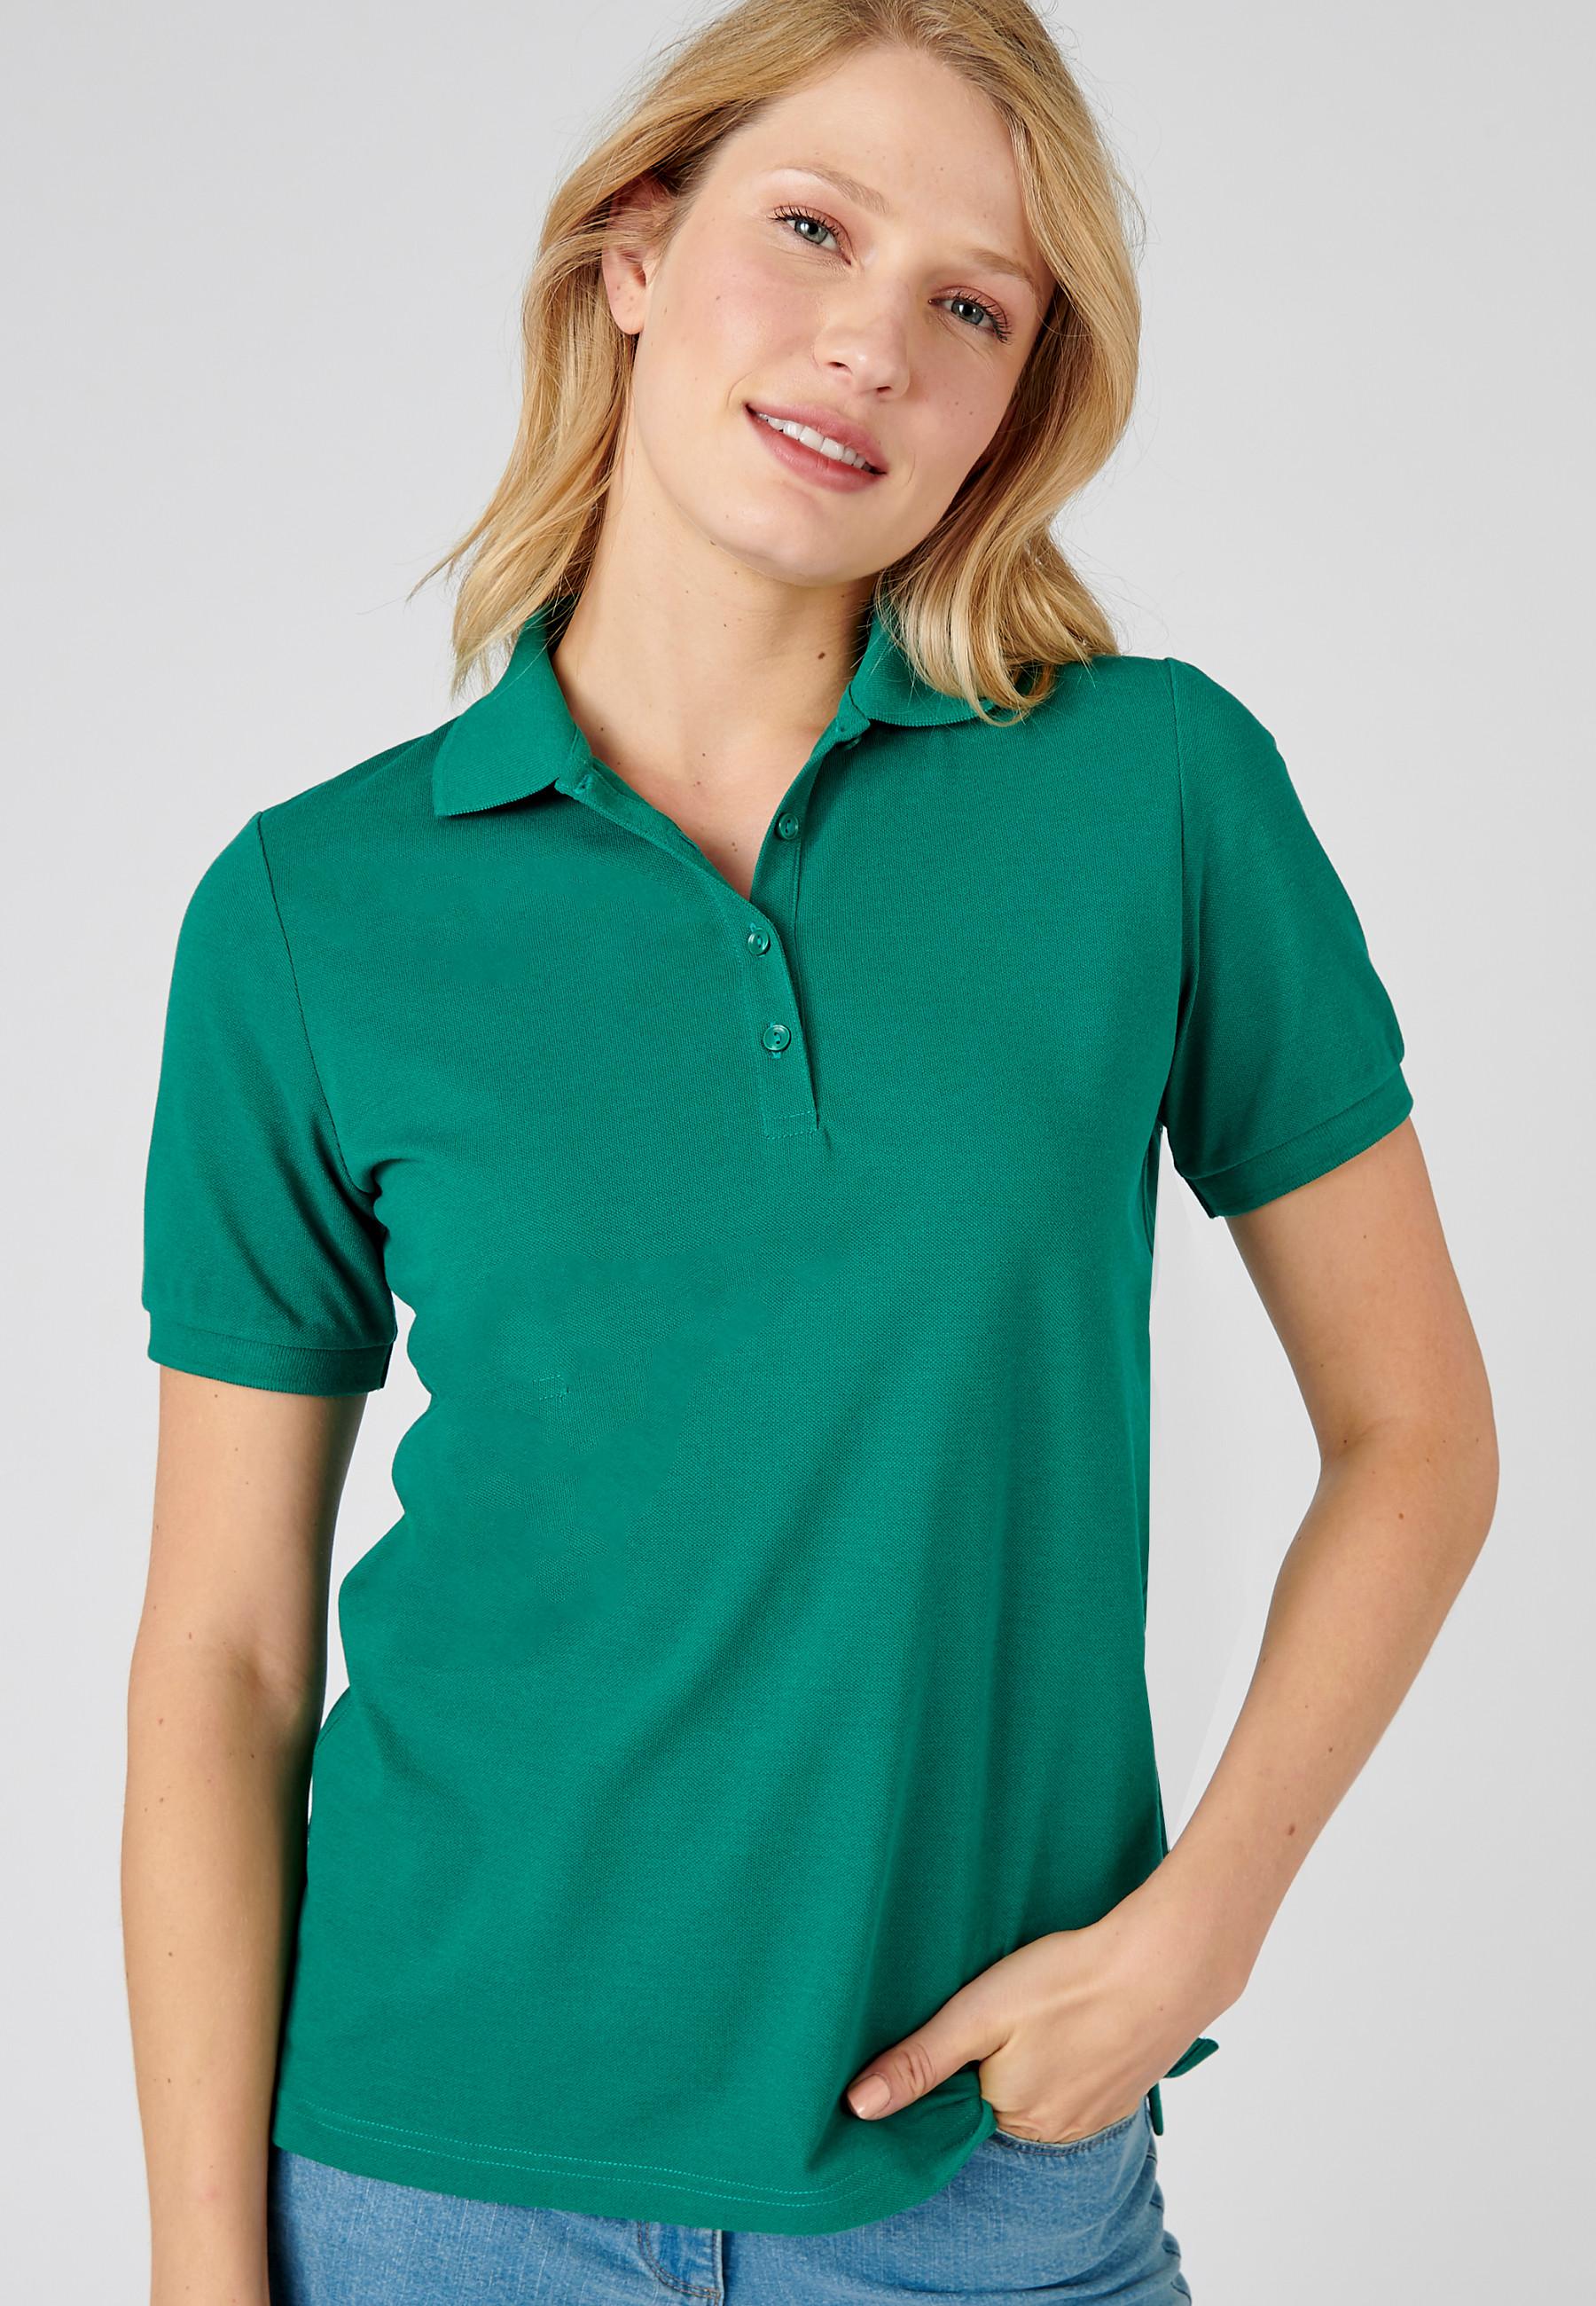 Kurzärmeliges Poloshirt, Steppmasche. Damen Grün 50/52 von Damart